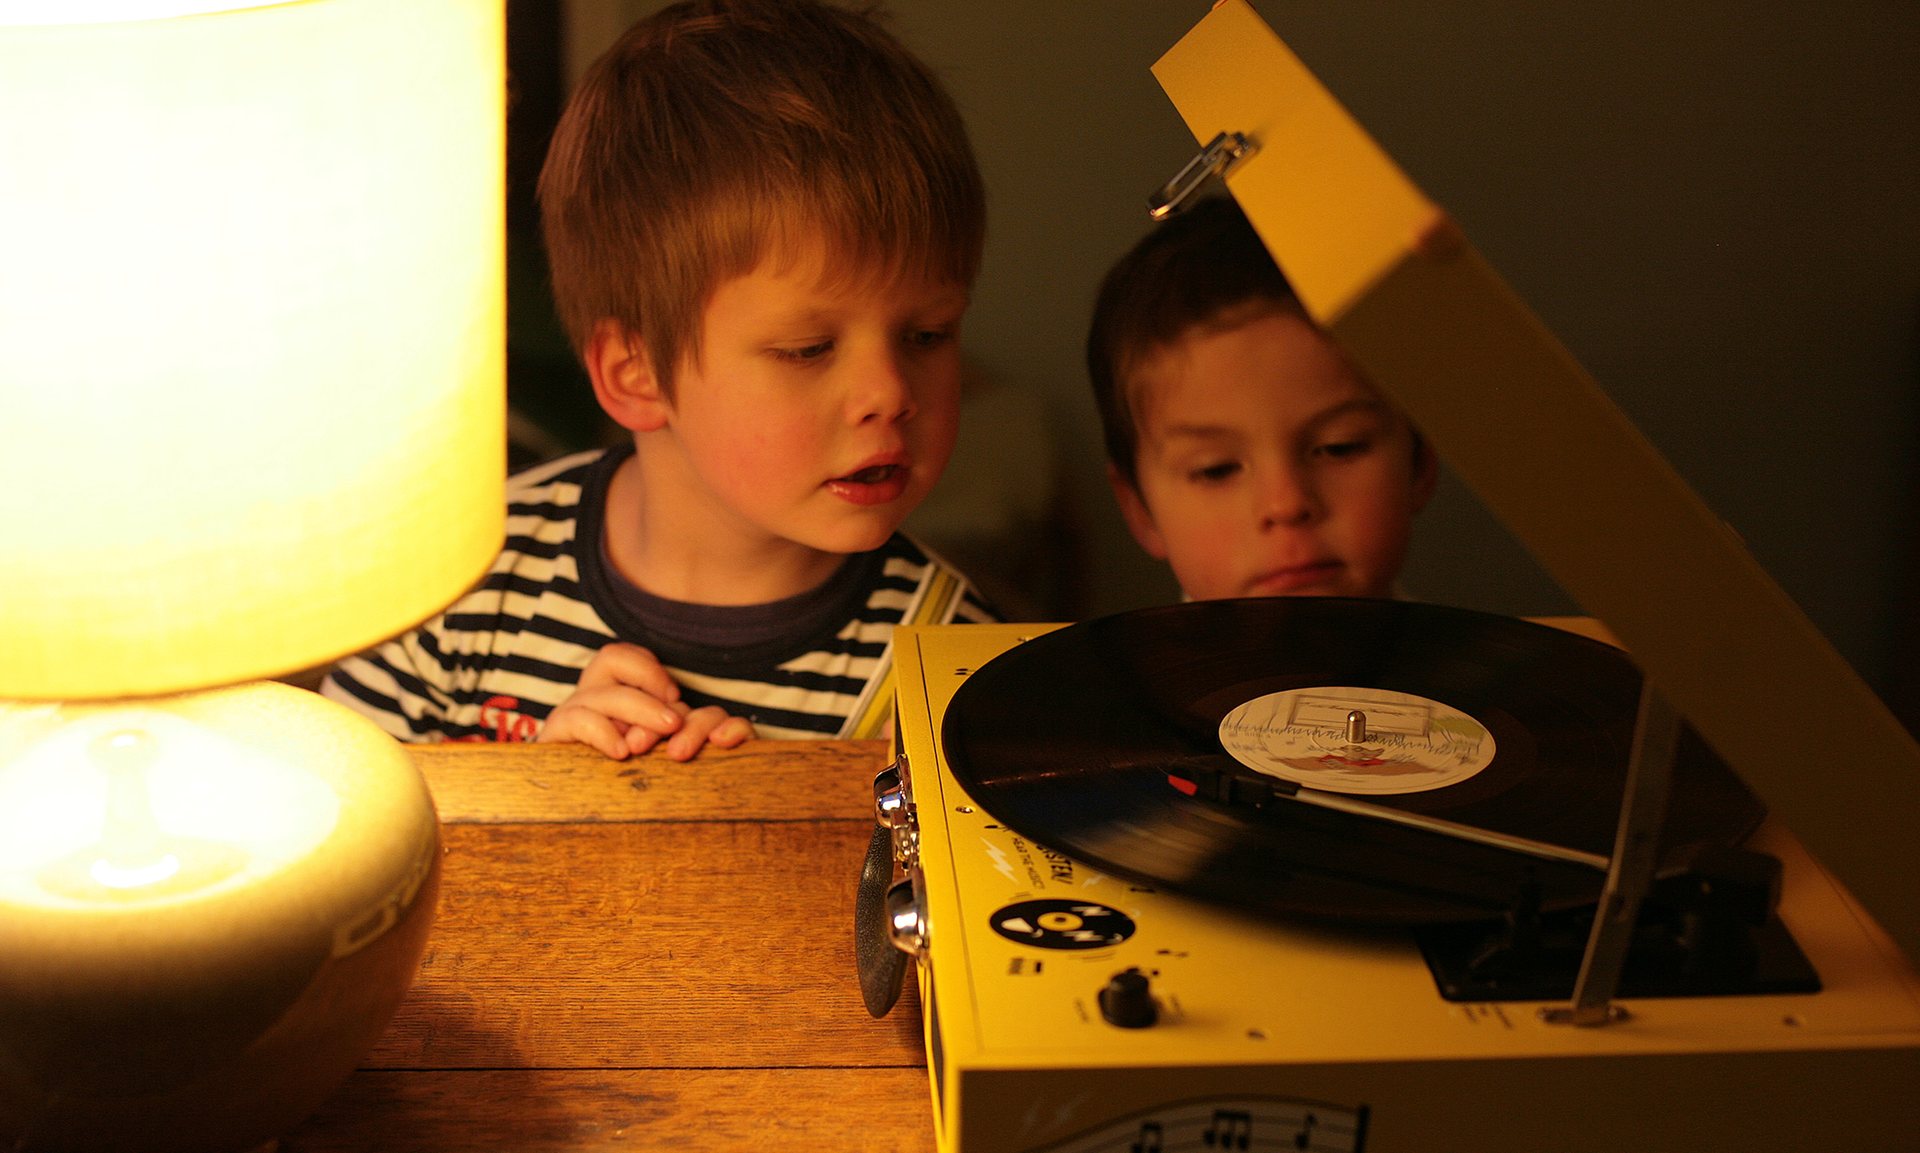 Für die ersten Vinyl-Erfahrungen der Kleinen: der Kinder-Plattenspieler von Third Man Records